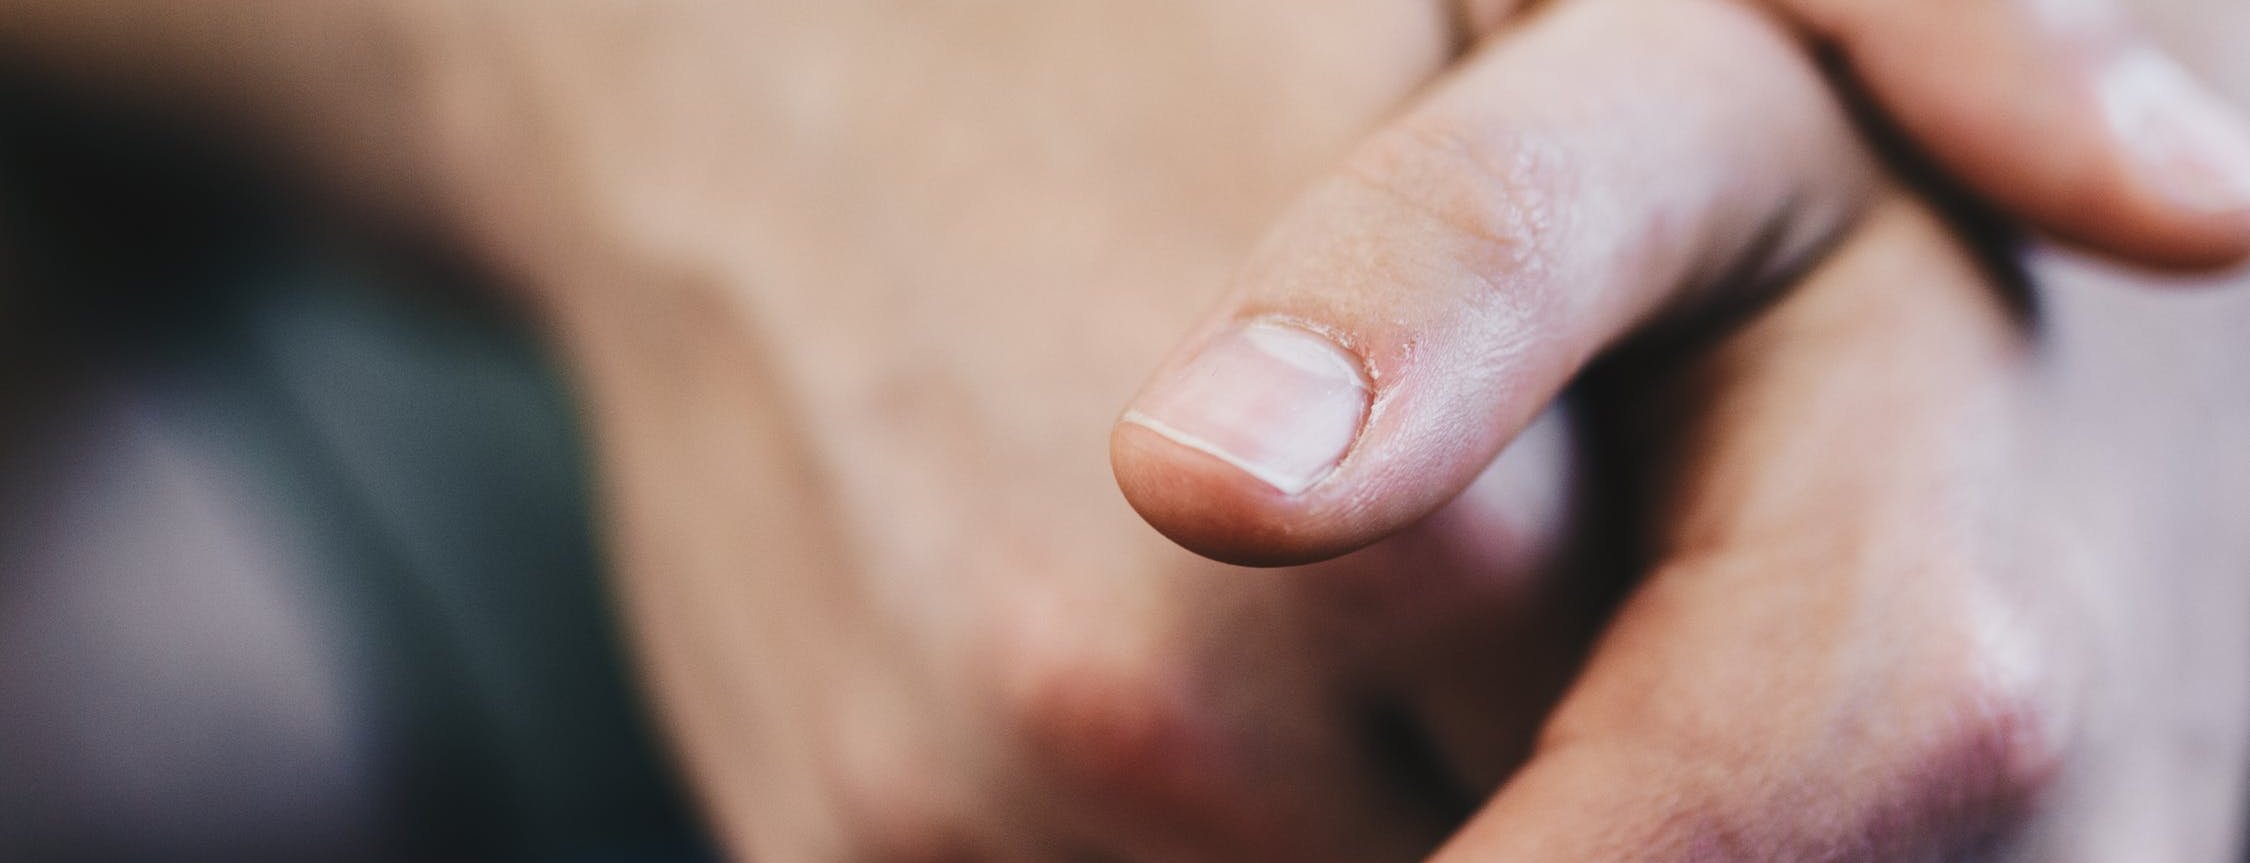 Por qué salen manchas blancas en las uñas